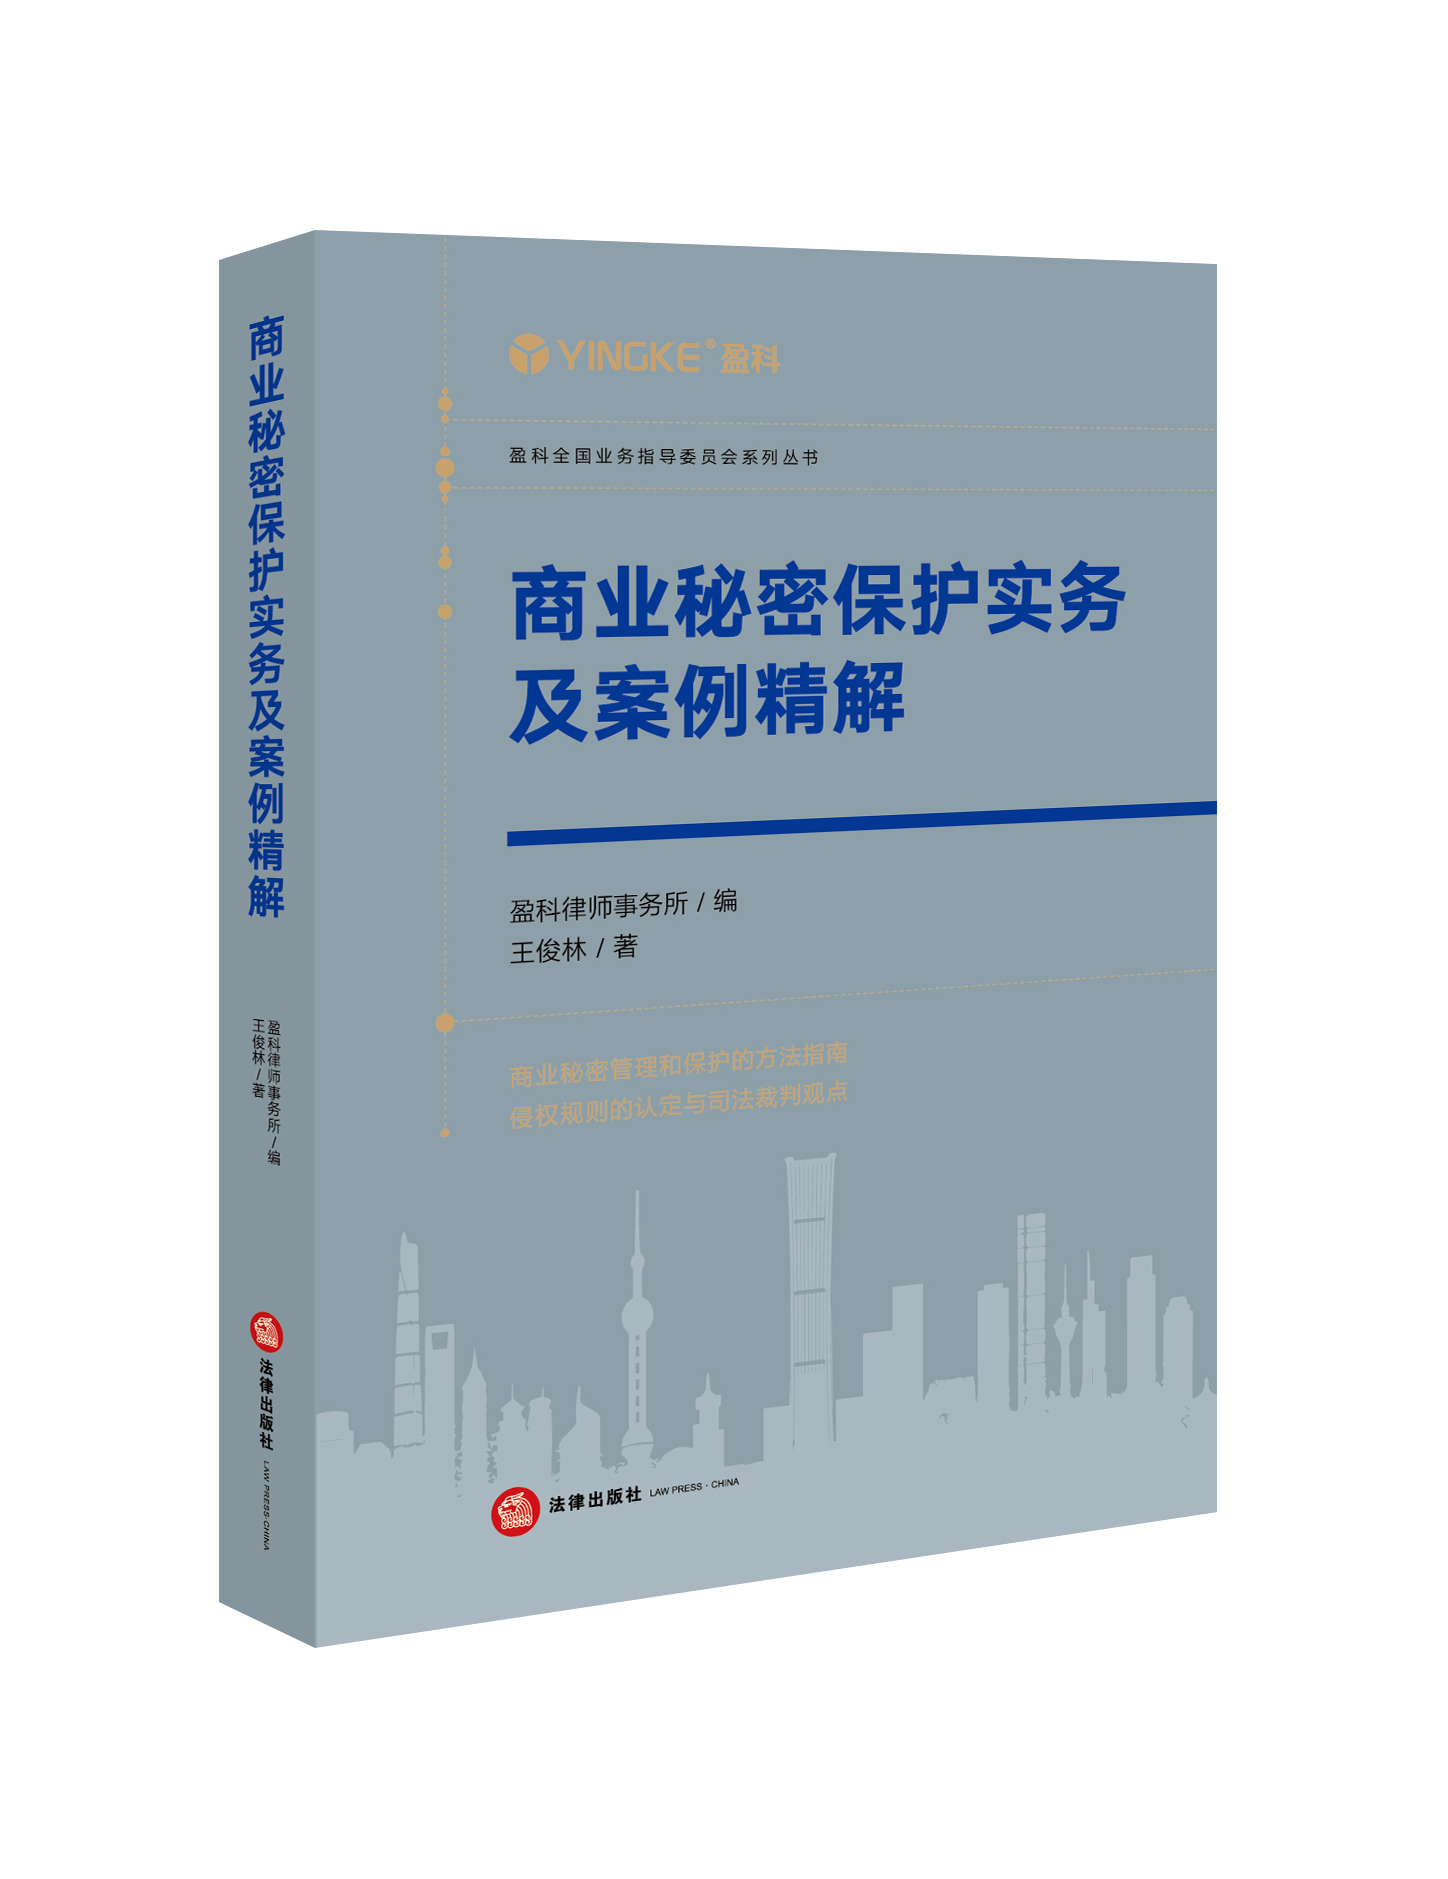 王俊林律师新作《商业秘密保护实务及案例精解》正式出版